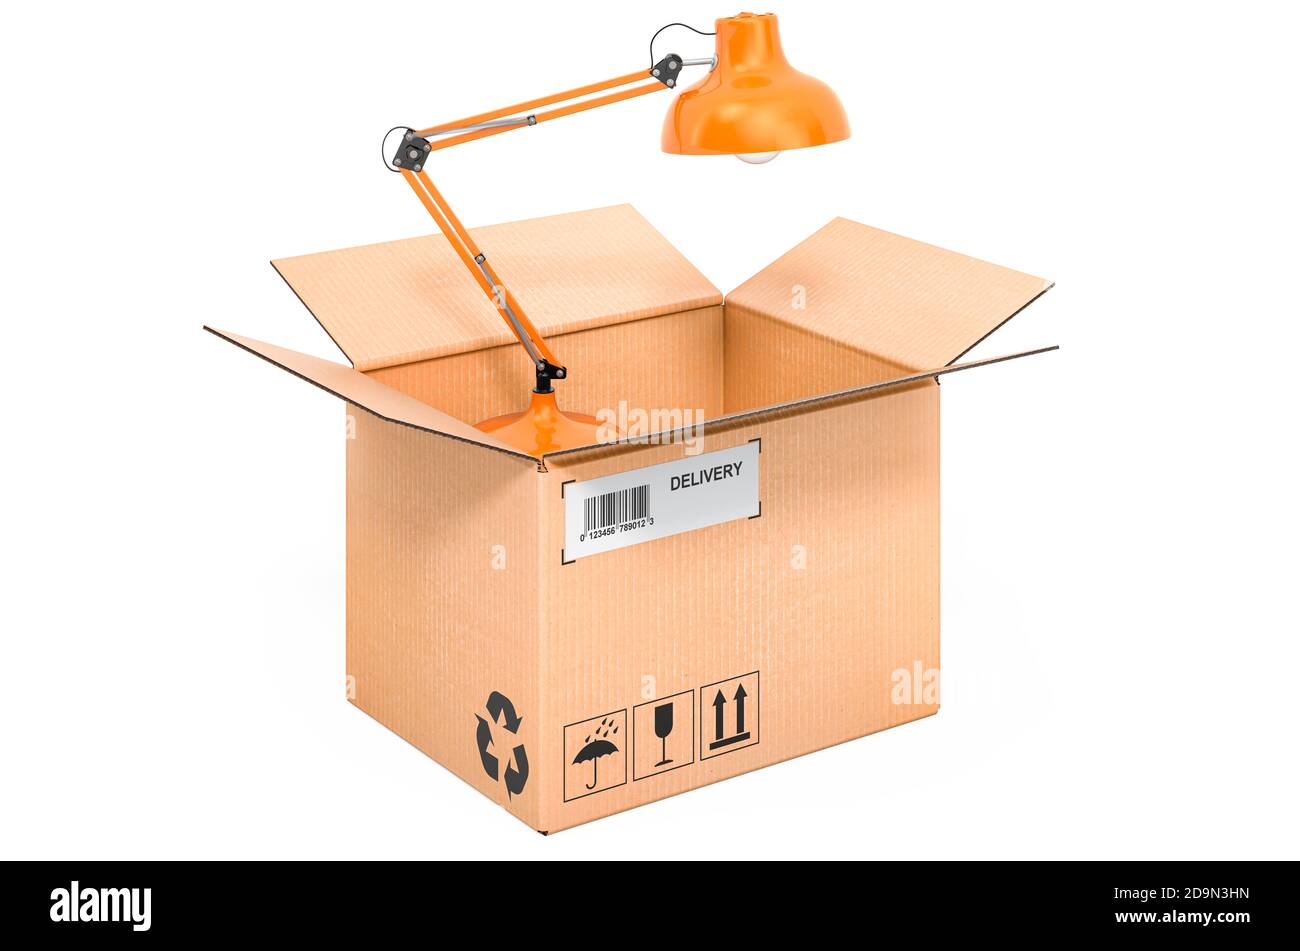 Lampe de bureau à l'intérieur d'une boîte en carton, concept de livraison. Rendu 3D isolé sur fond blanc Banque D'Images